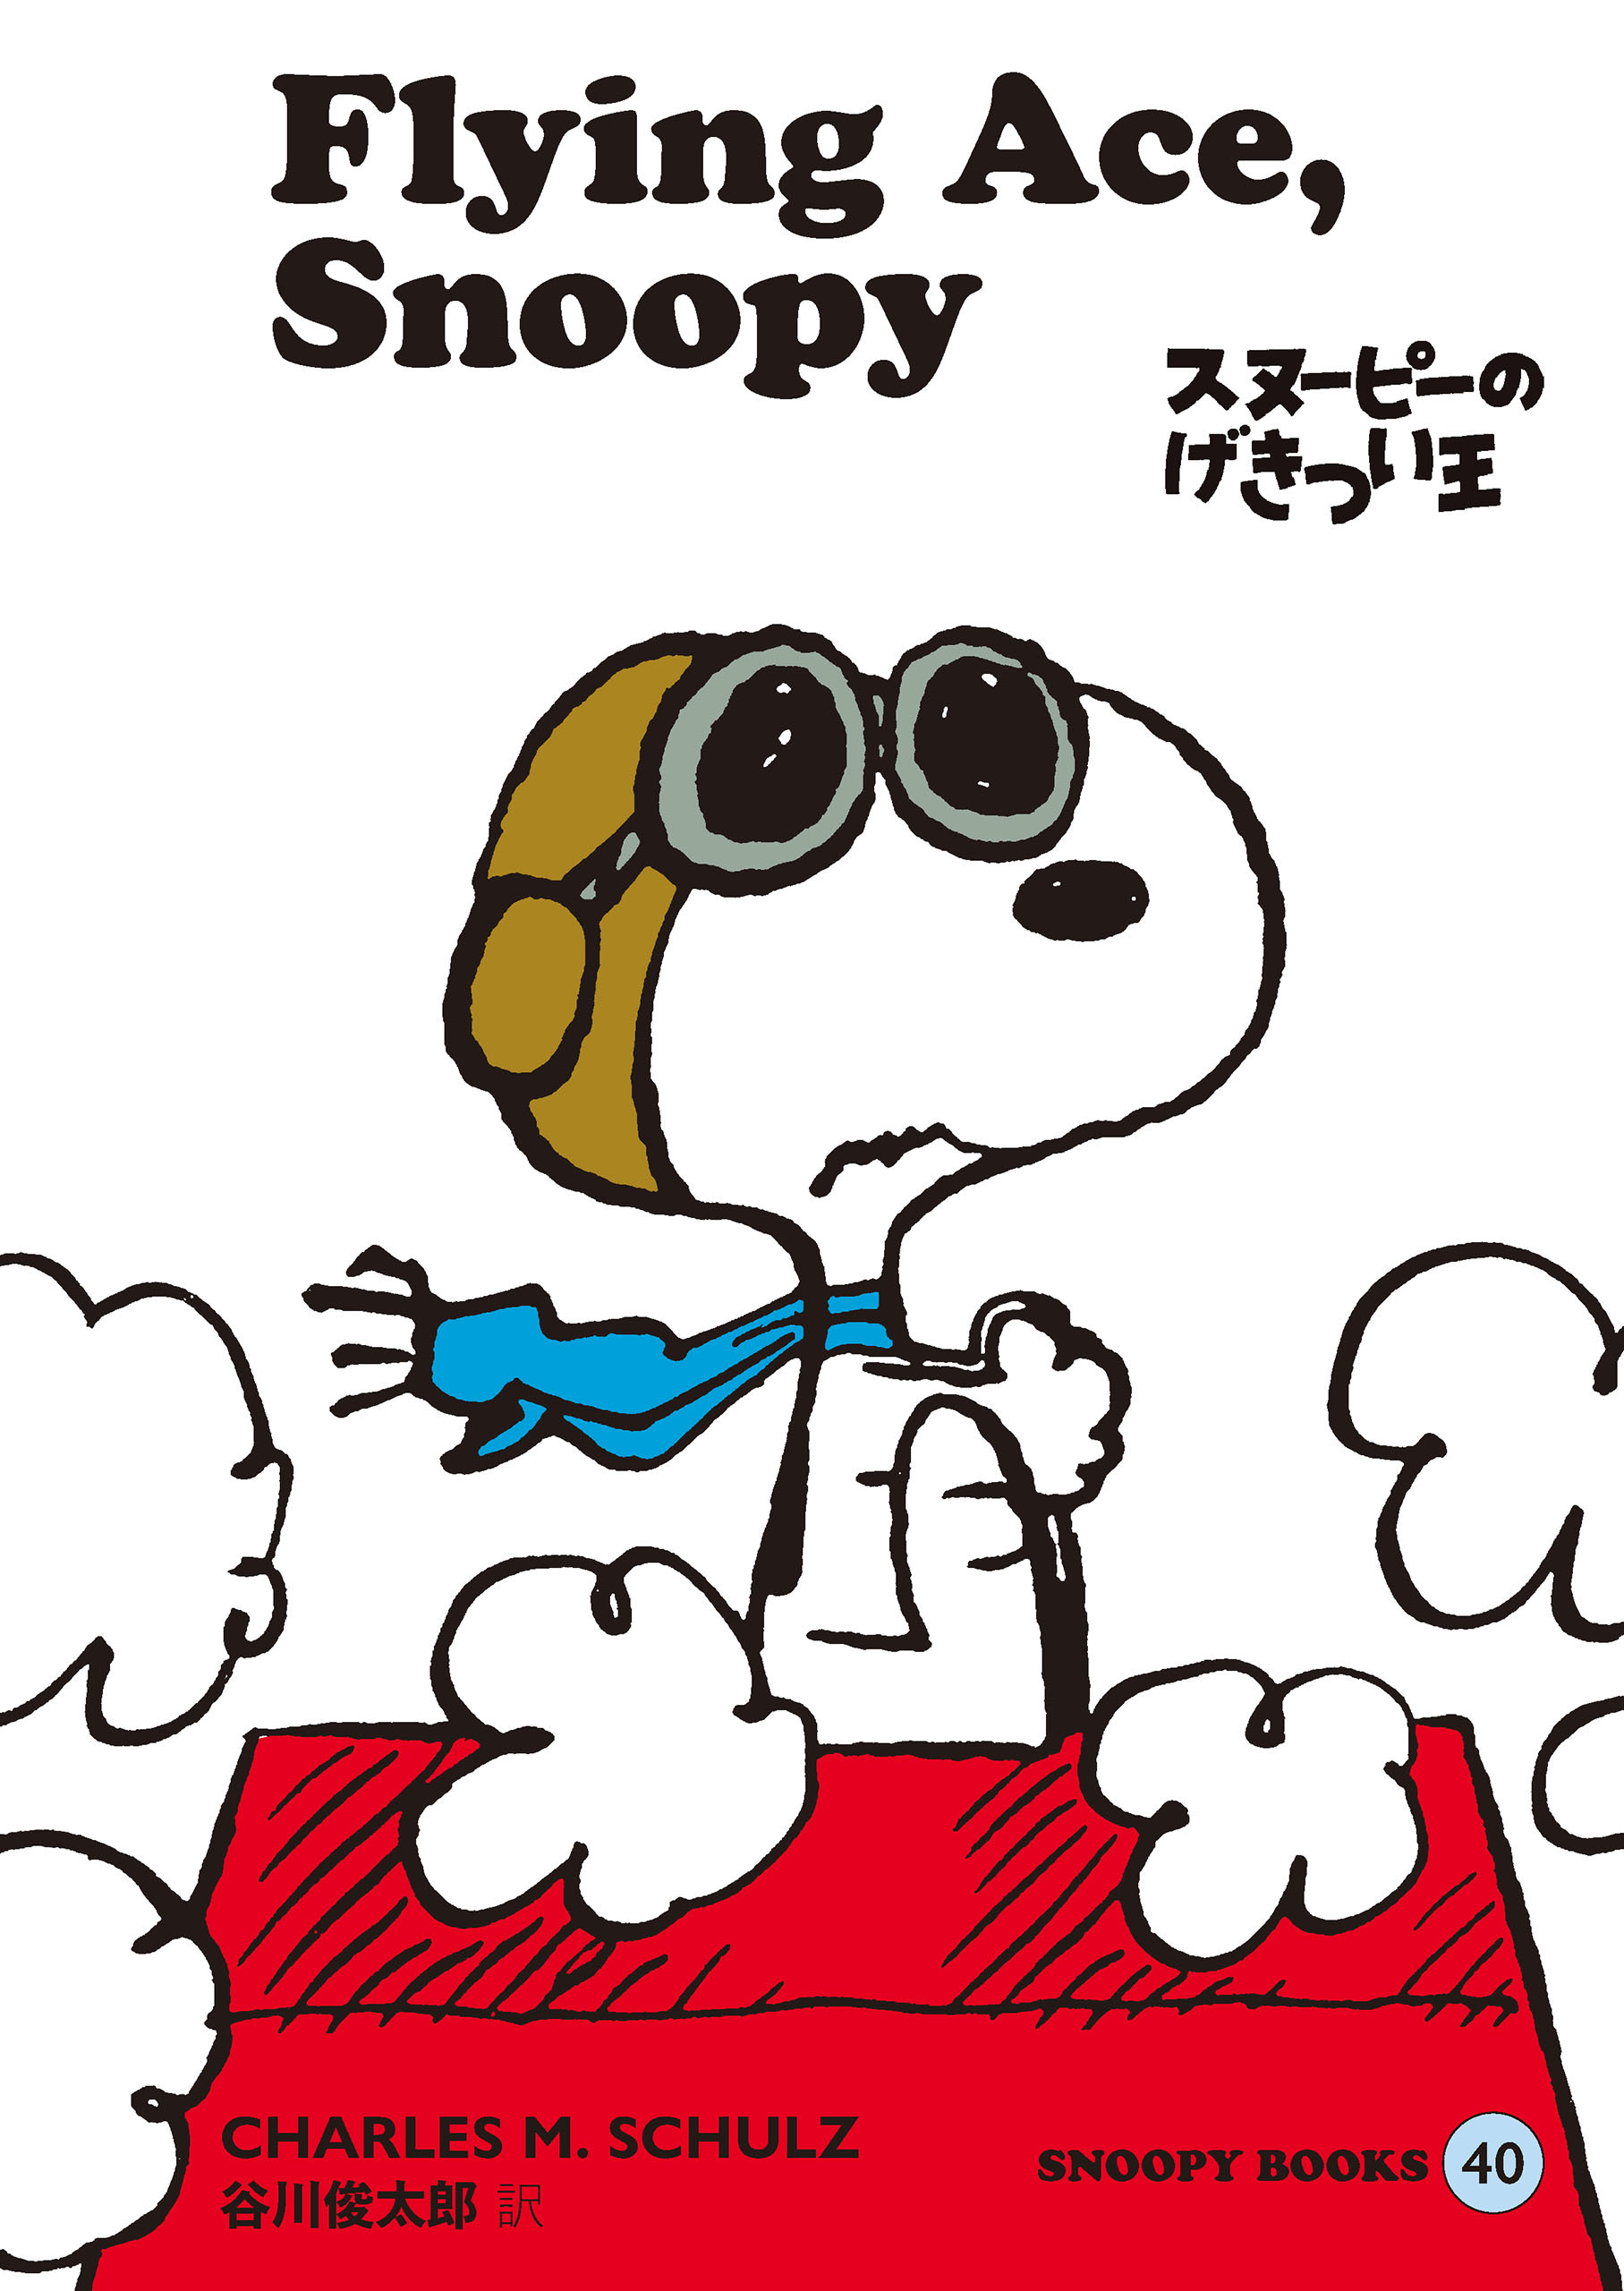 SNOOPY BOOKS全巻(1-40巻 最新刊)|チャールズ M.シュルツ